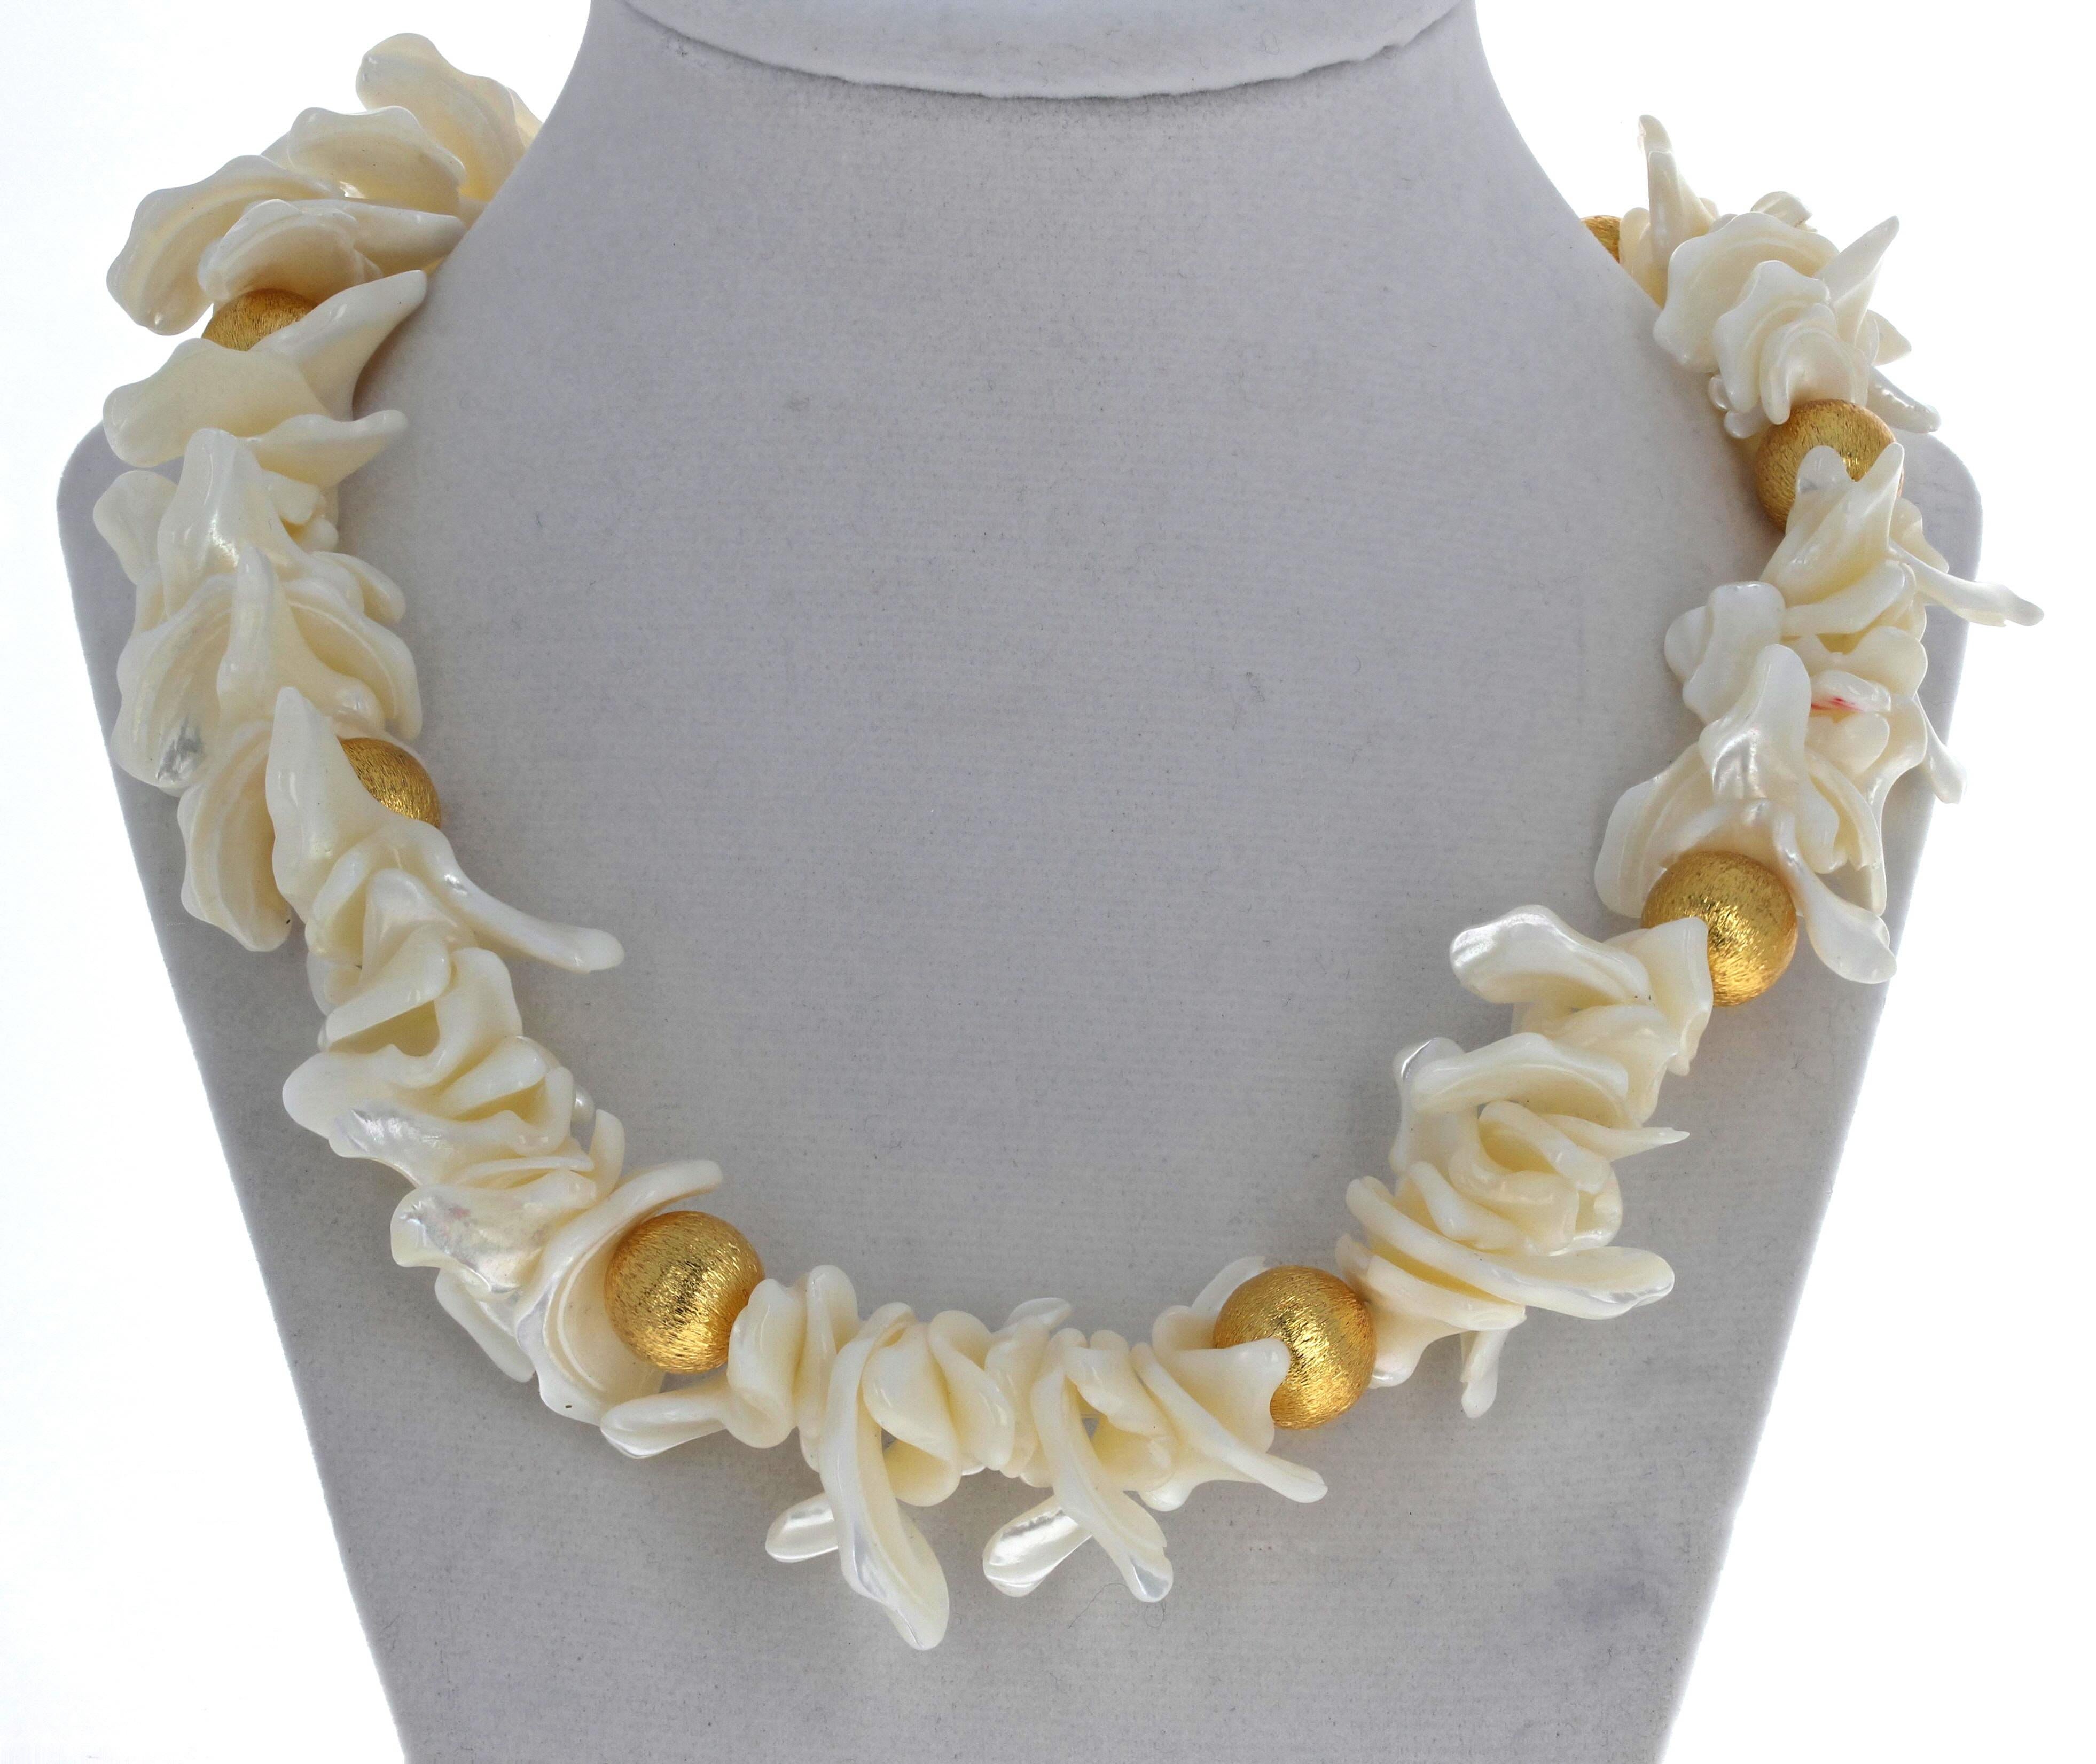 Ce magnifique collier de 19 pouces de long en perles naturelles blanches flip flop est rehaussé de rondelles plaquées d'or jaune.  Les perles les plus longues mesurent environ 2,5 cm.  Les grands anneaux plaqués or mesurent 13 mm.  Le fermoir est un